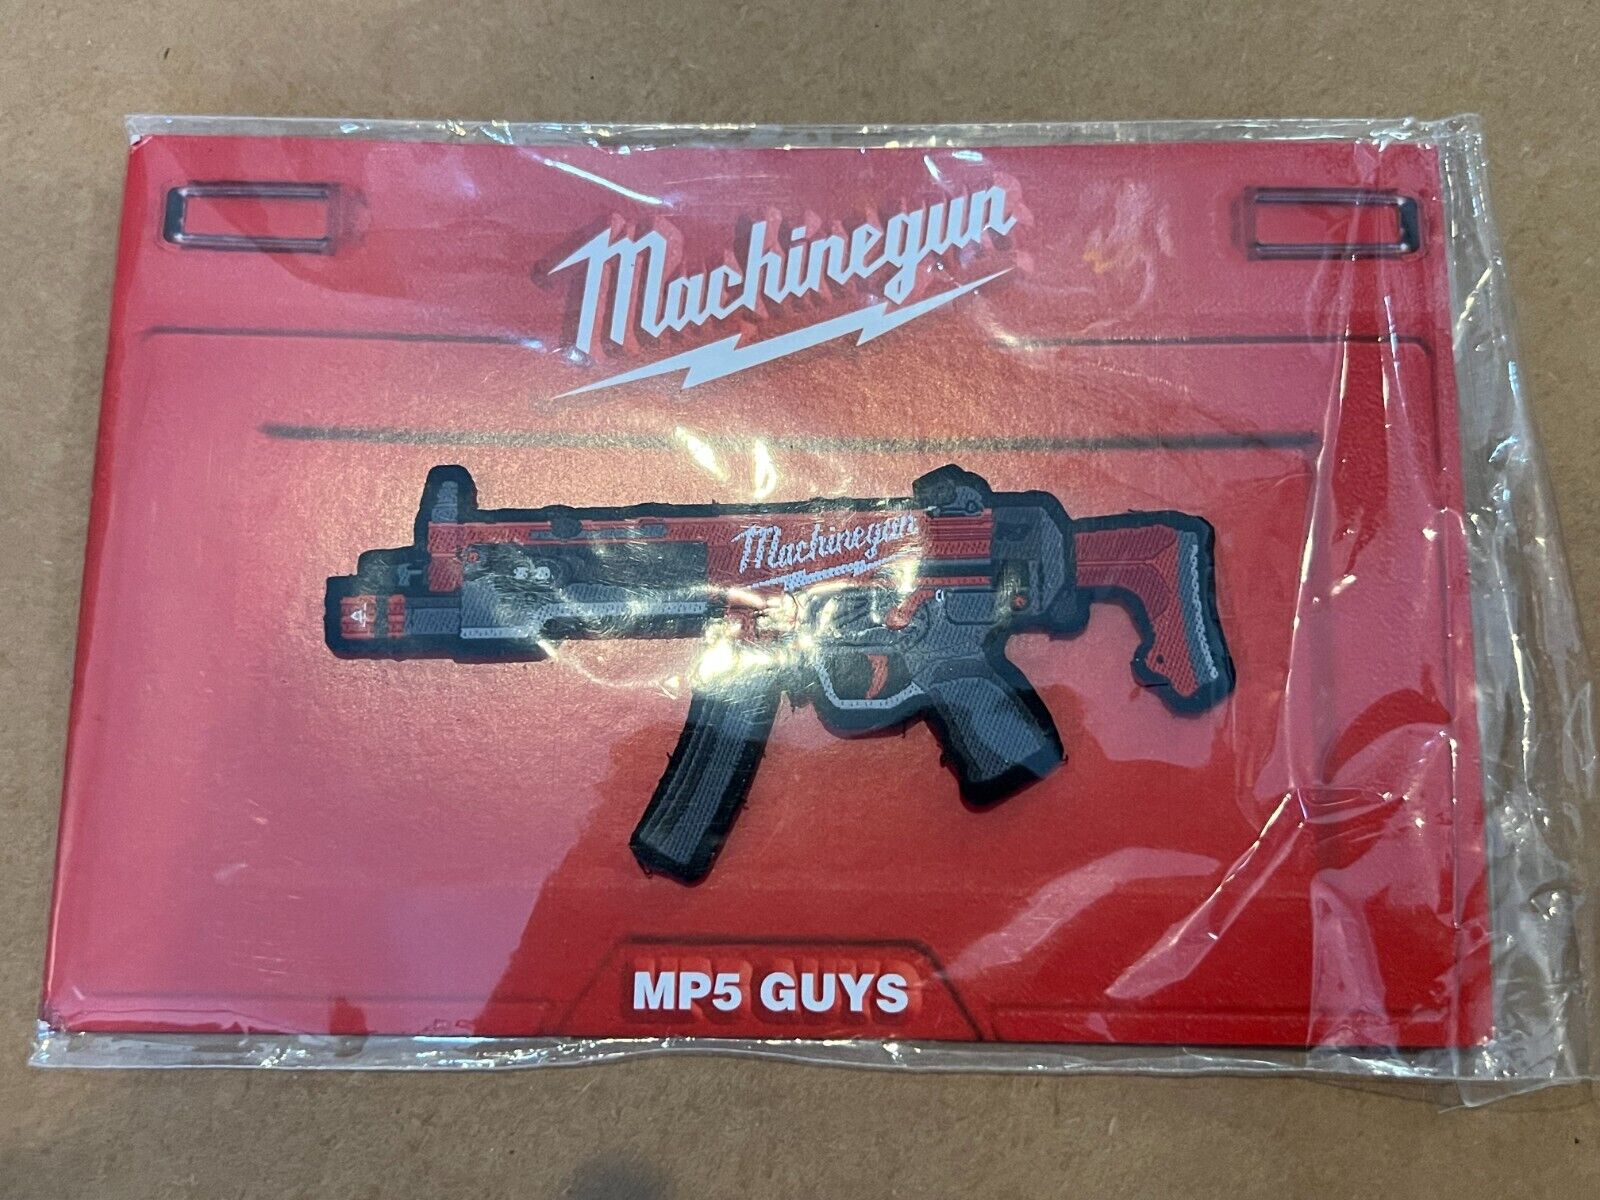 MP5 Guys OG Milwaukee MP5 Patch On Card